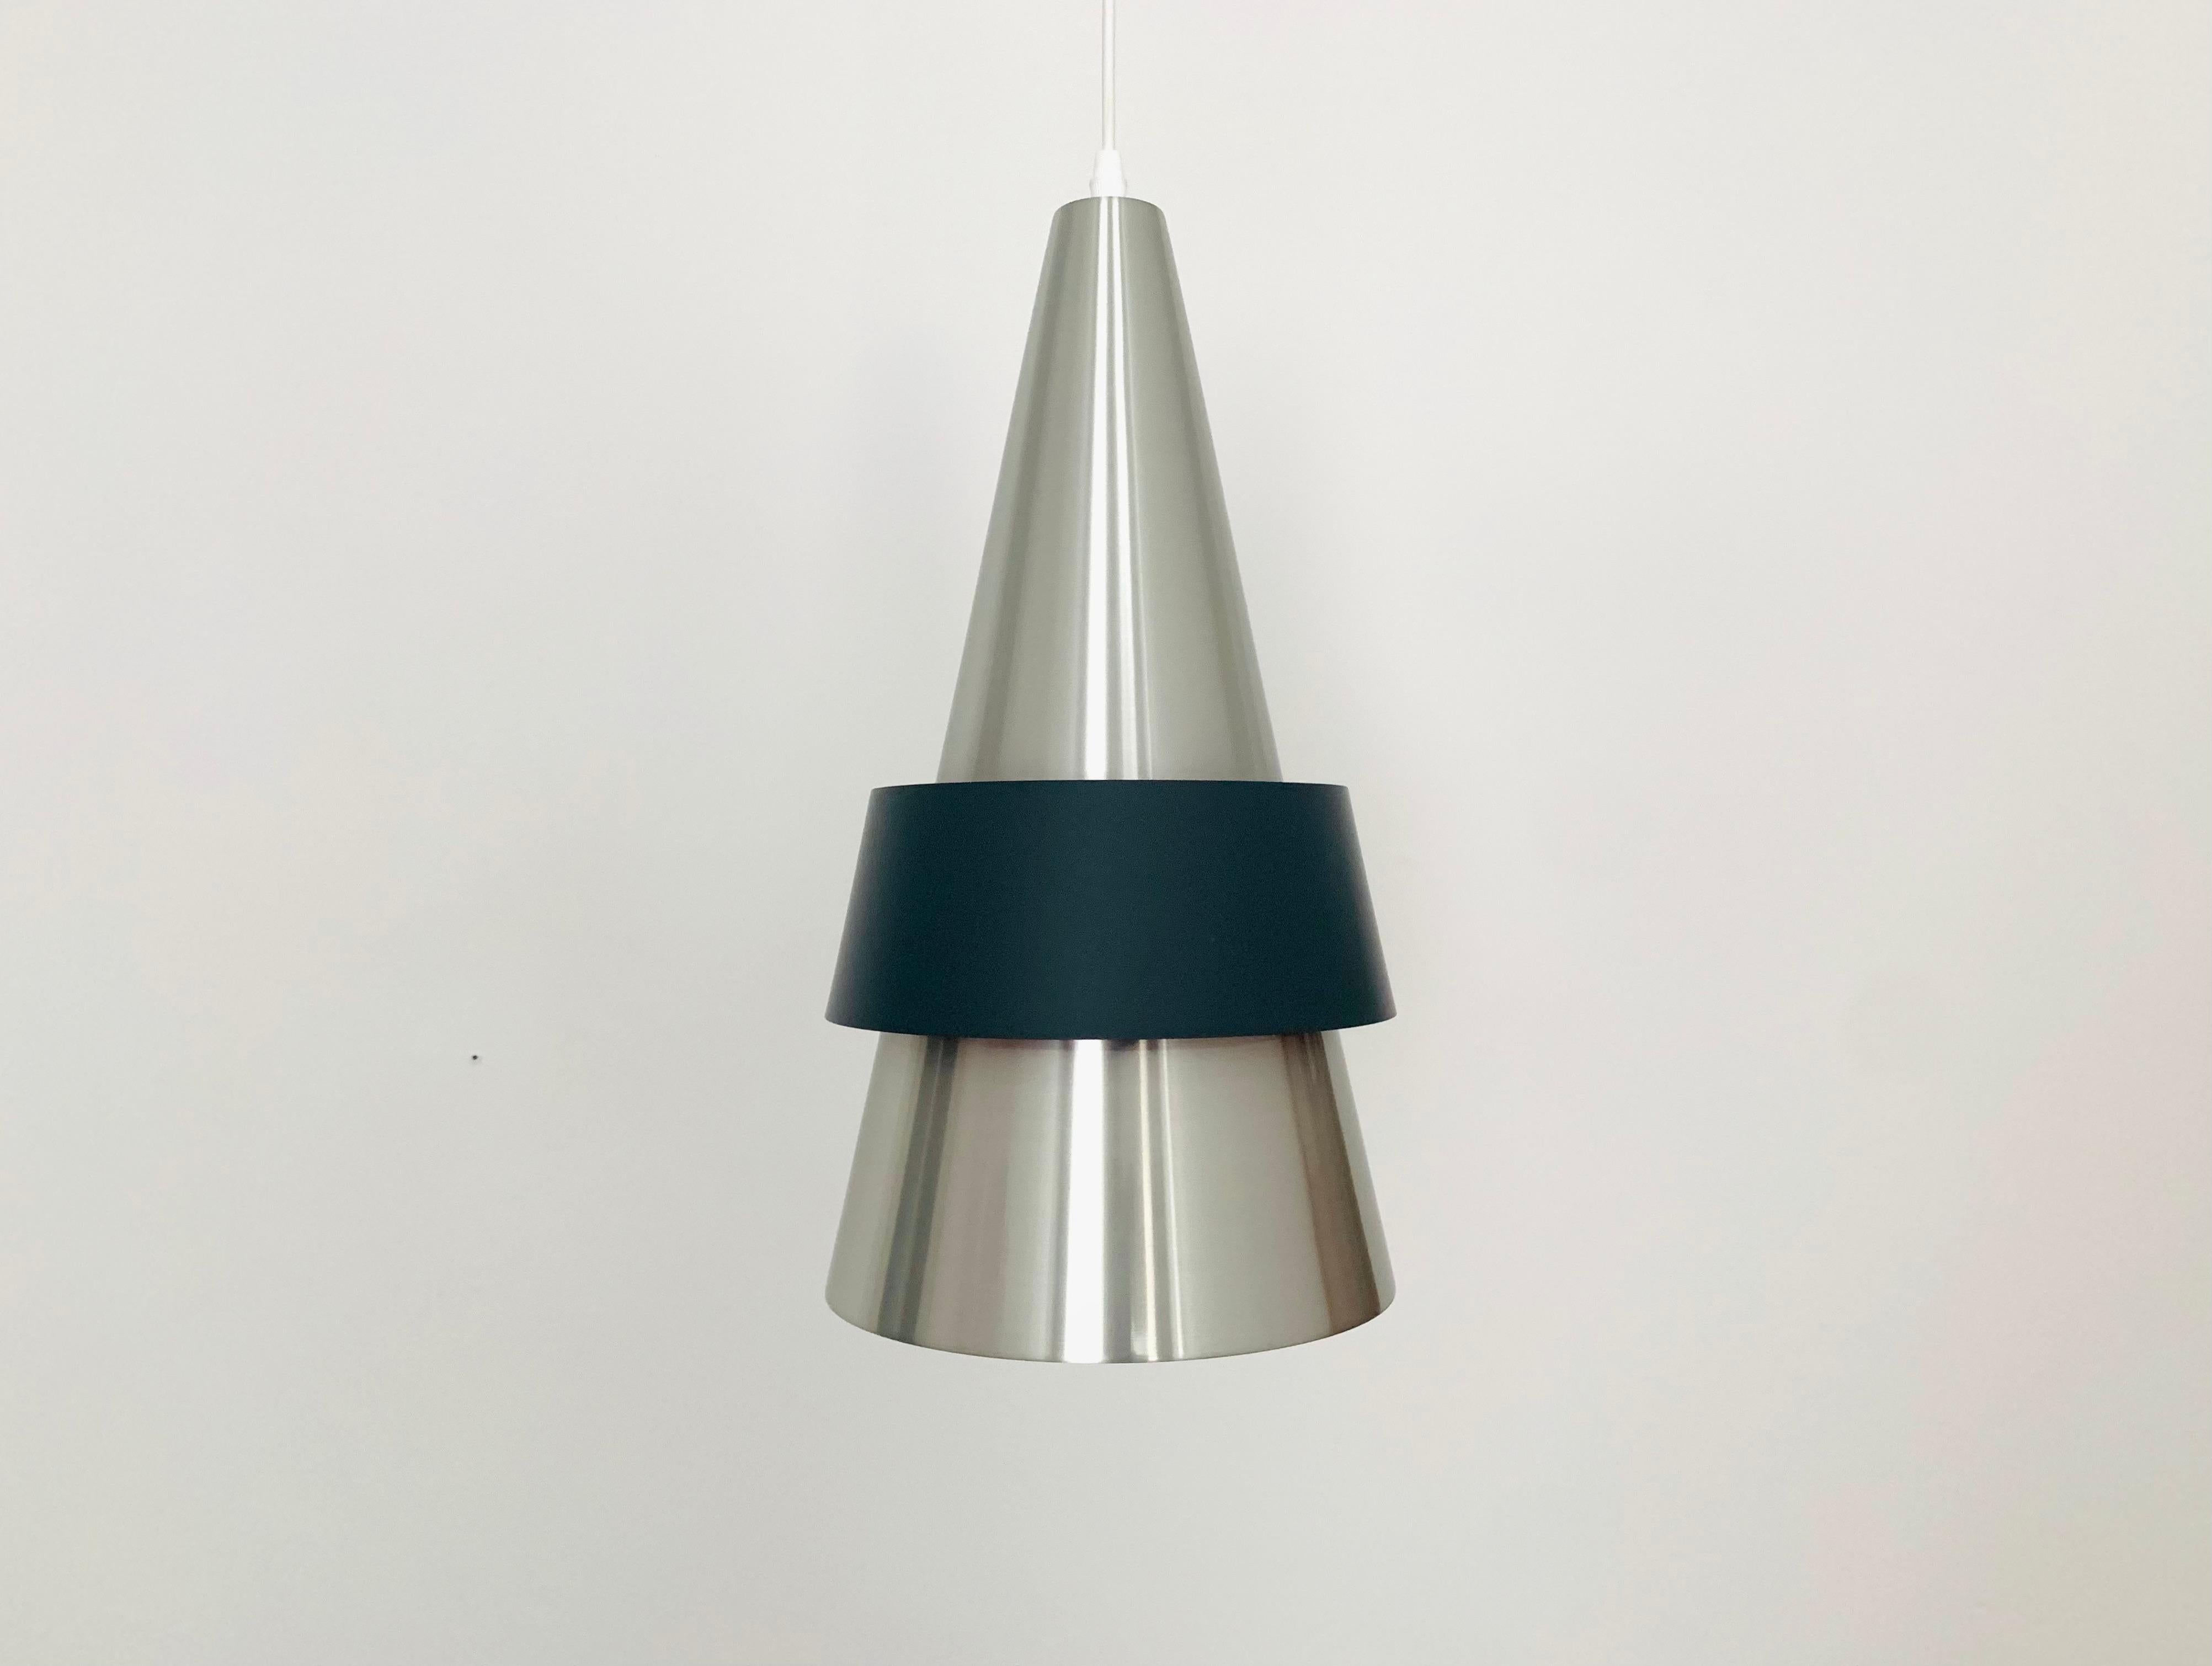 Très belle lampe suspendue Corona de Fog et Morup datant des années 1960.
La disposition des lamelles et le design des couleurs créent une atmosphère lumineuse très agréable.
Le design/One est d'une beauté et d'une modernité